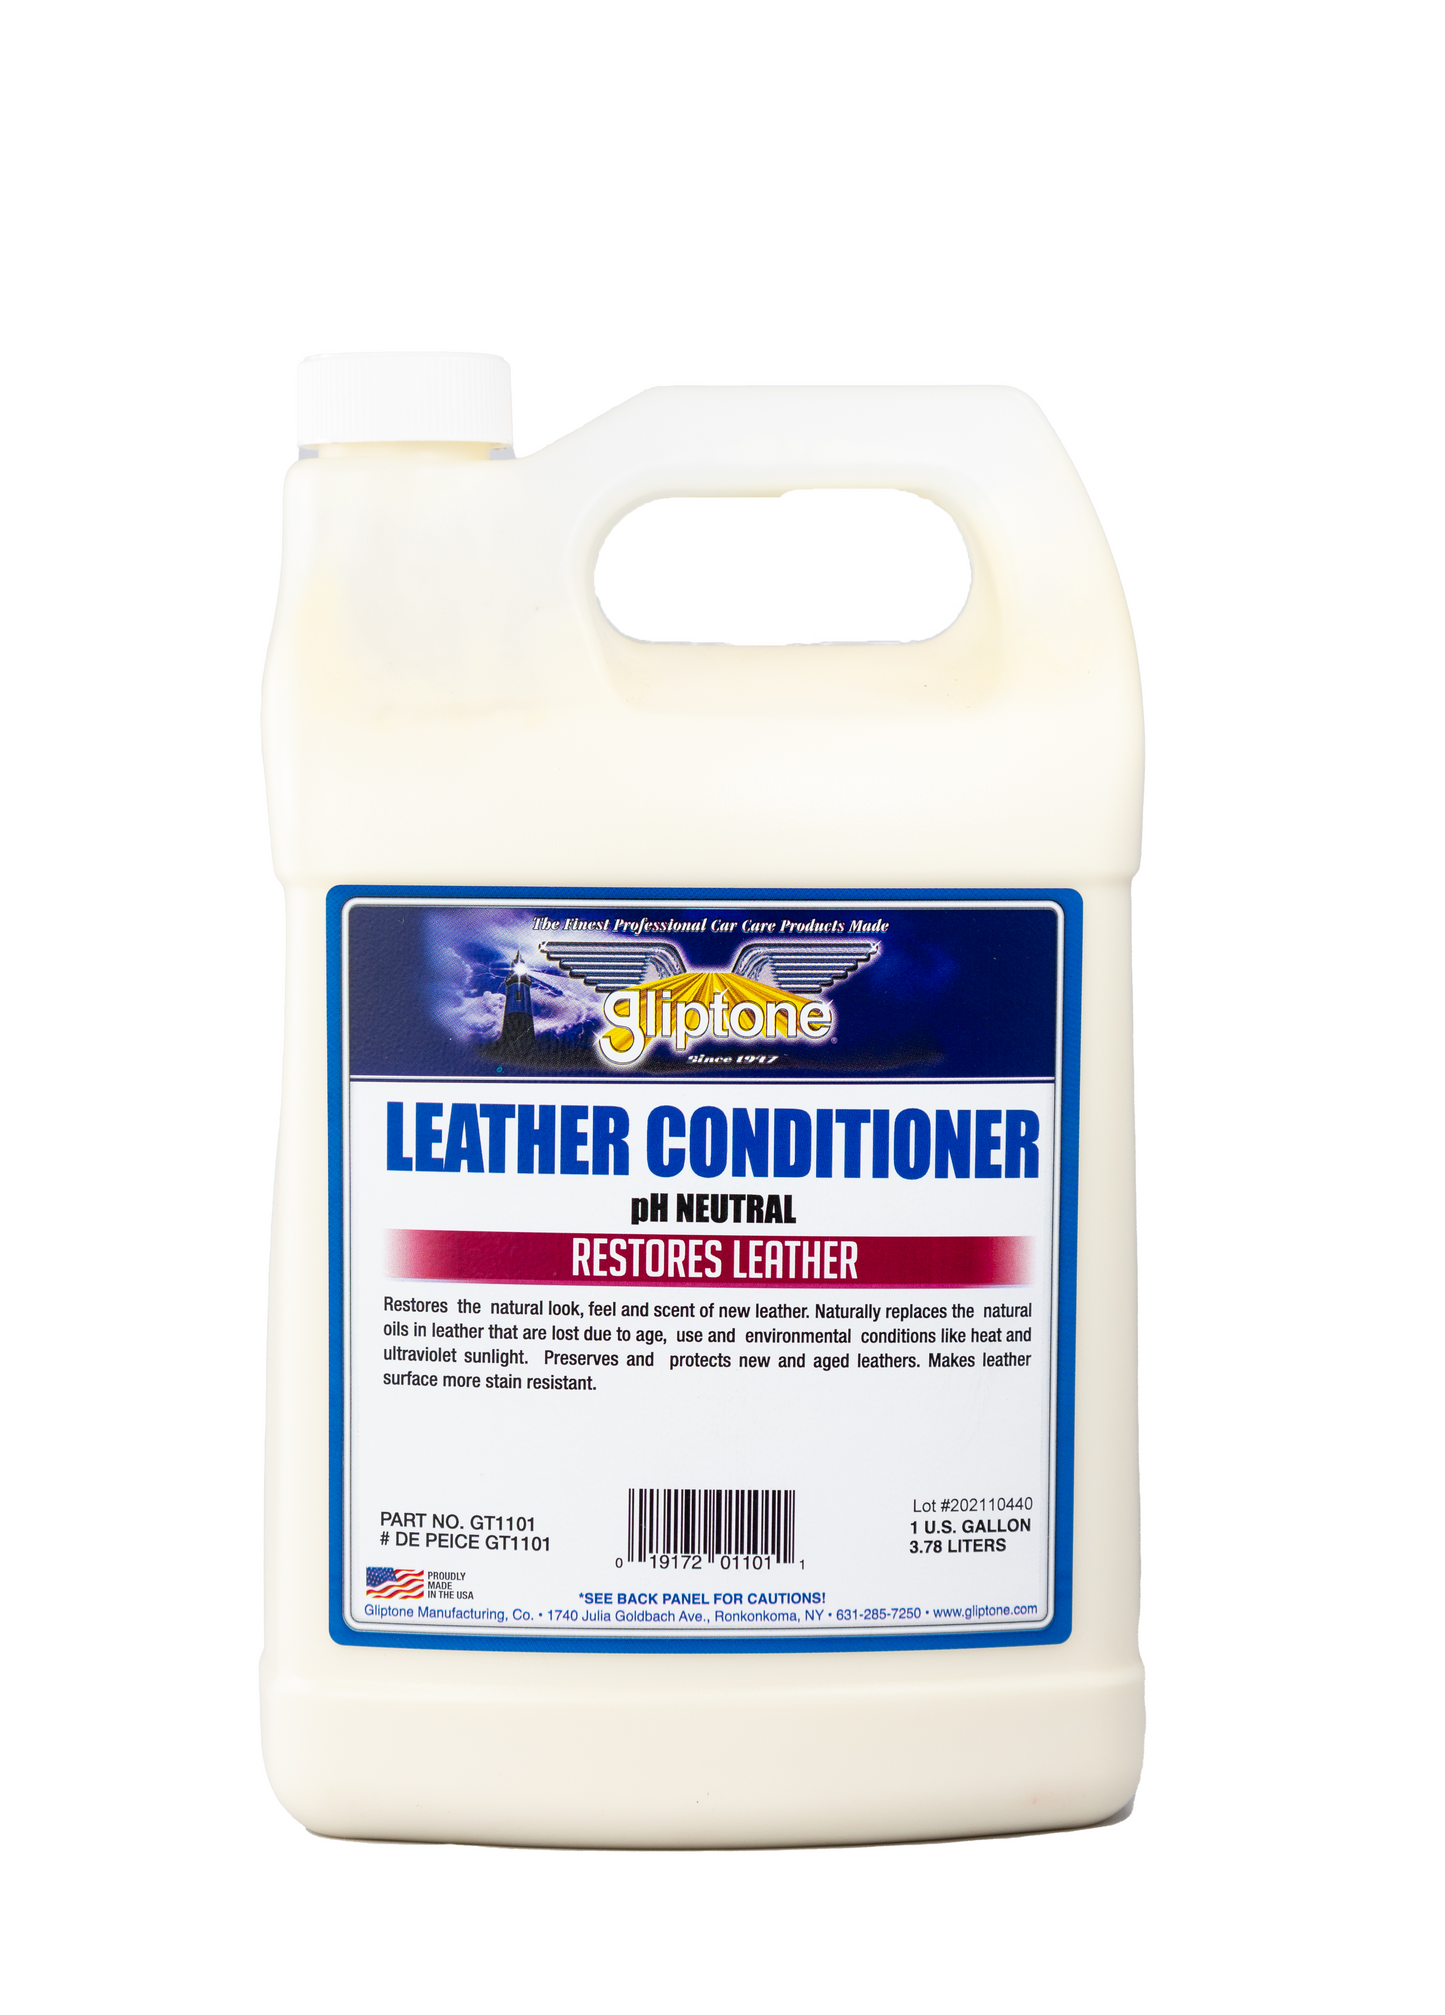 Gliptone Leather Conditioner